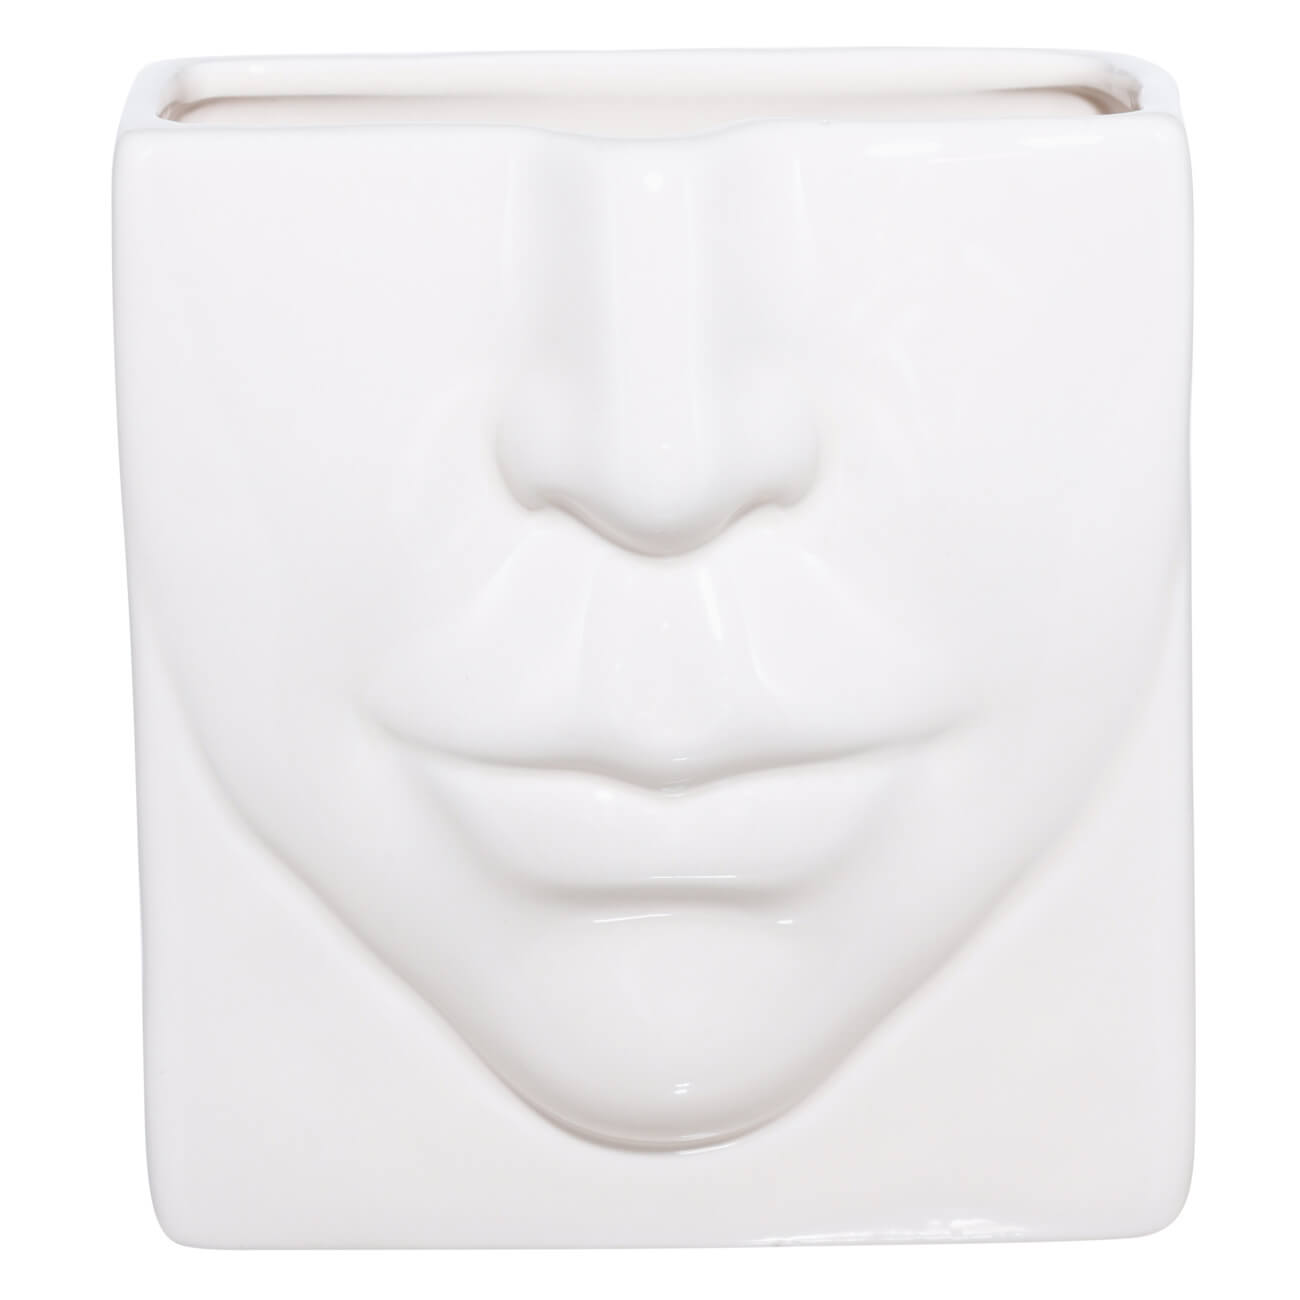 Подставка для косметических кистей, 13х11 см, керамика, молочная, Часть лица, Face подставка подогрев для чайника